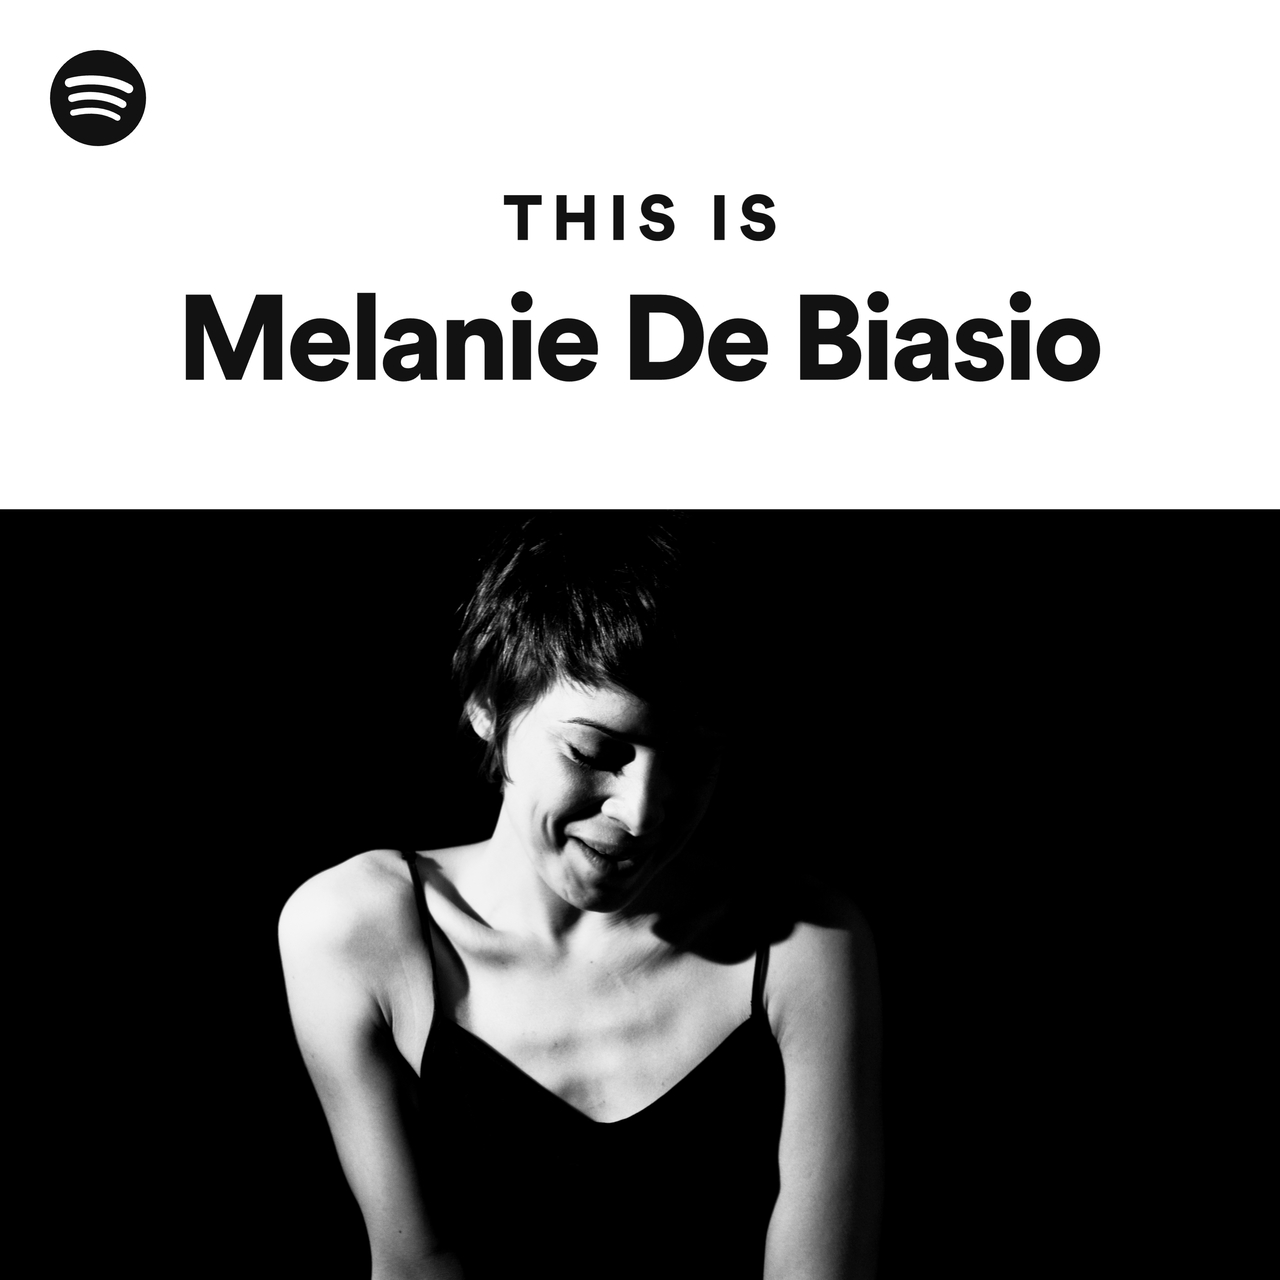 This Is Melanie De Biasio - playlist by Spotify | Spotify